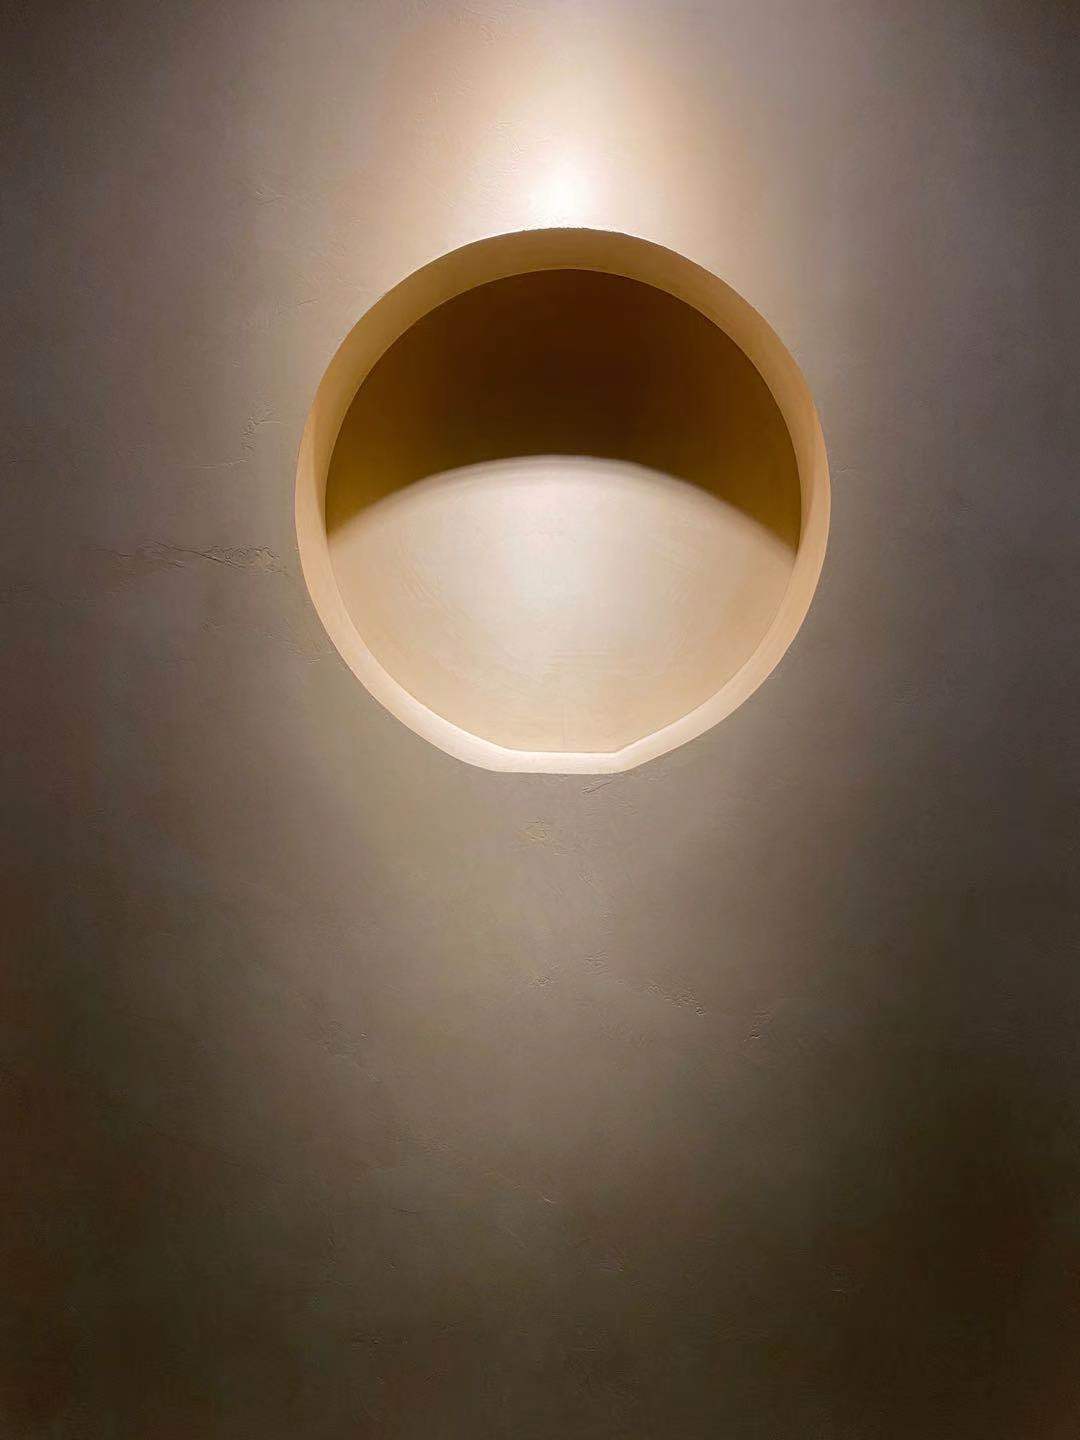 Mikrocement på väggen i ett minimalistiskt hem med belysning som framhäver beläggningen